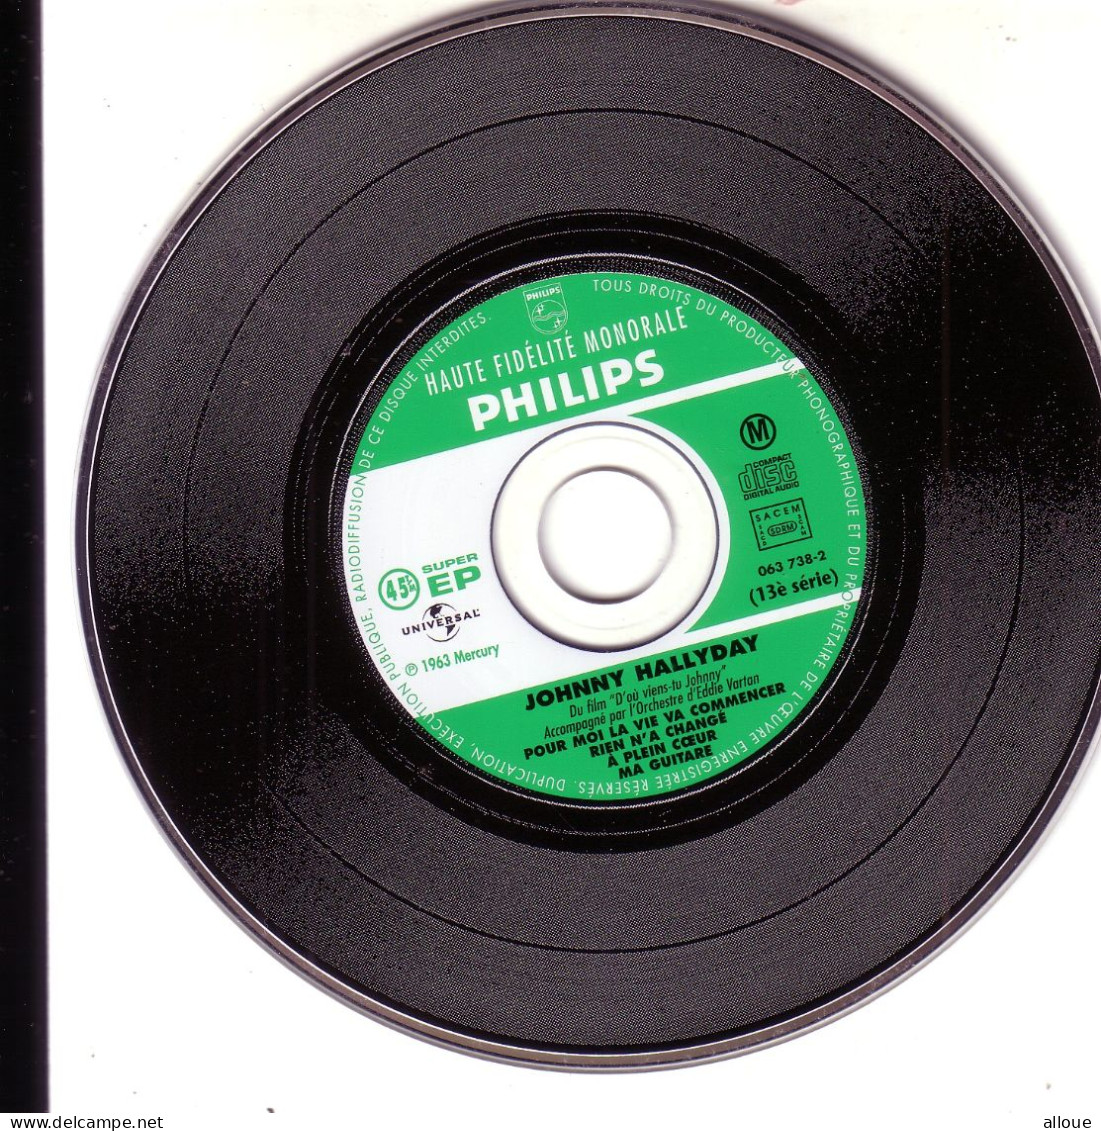 JOHNNY HALLYDAY CD EP POUR MOI LA VIE VA COMMENCER + 3 - Autres - Musique Française